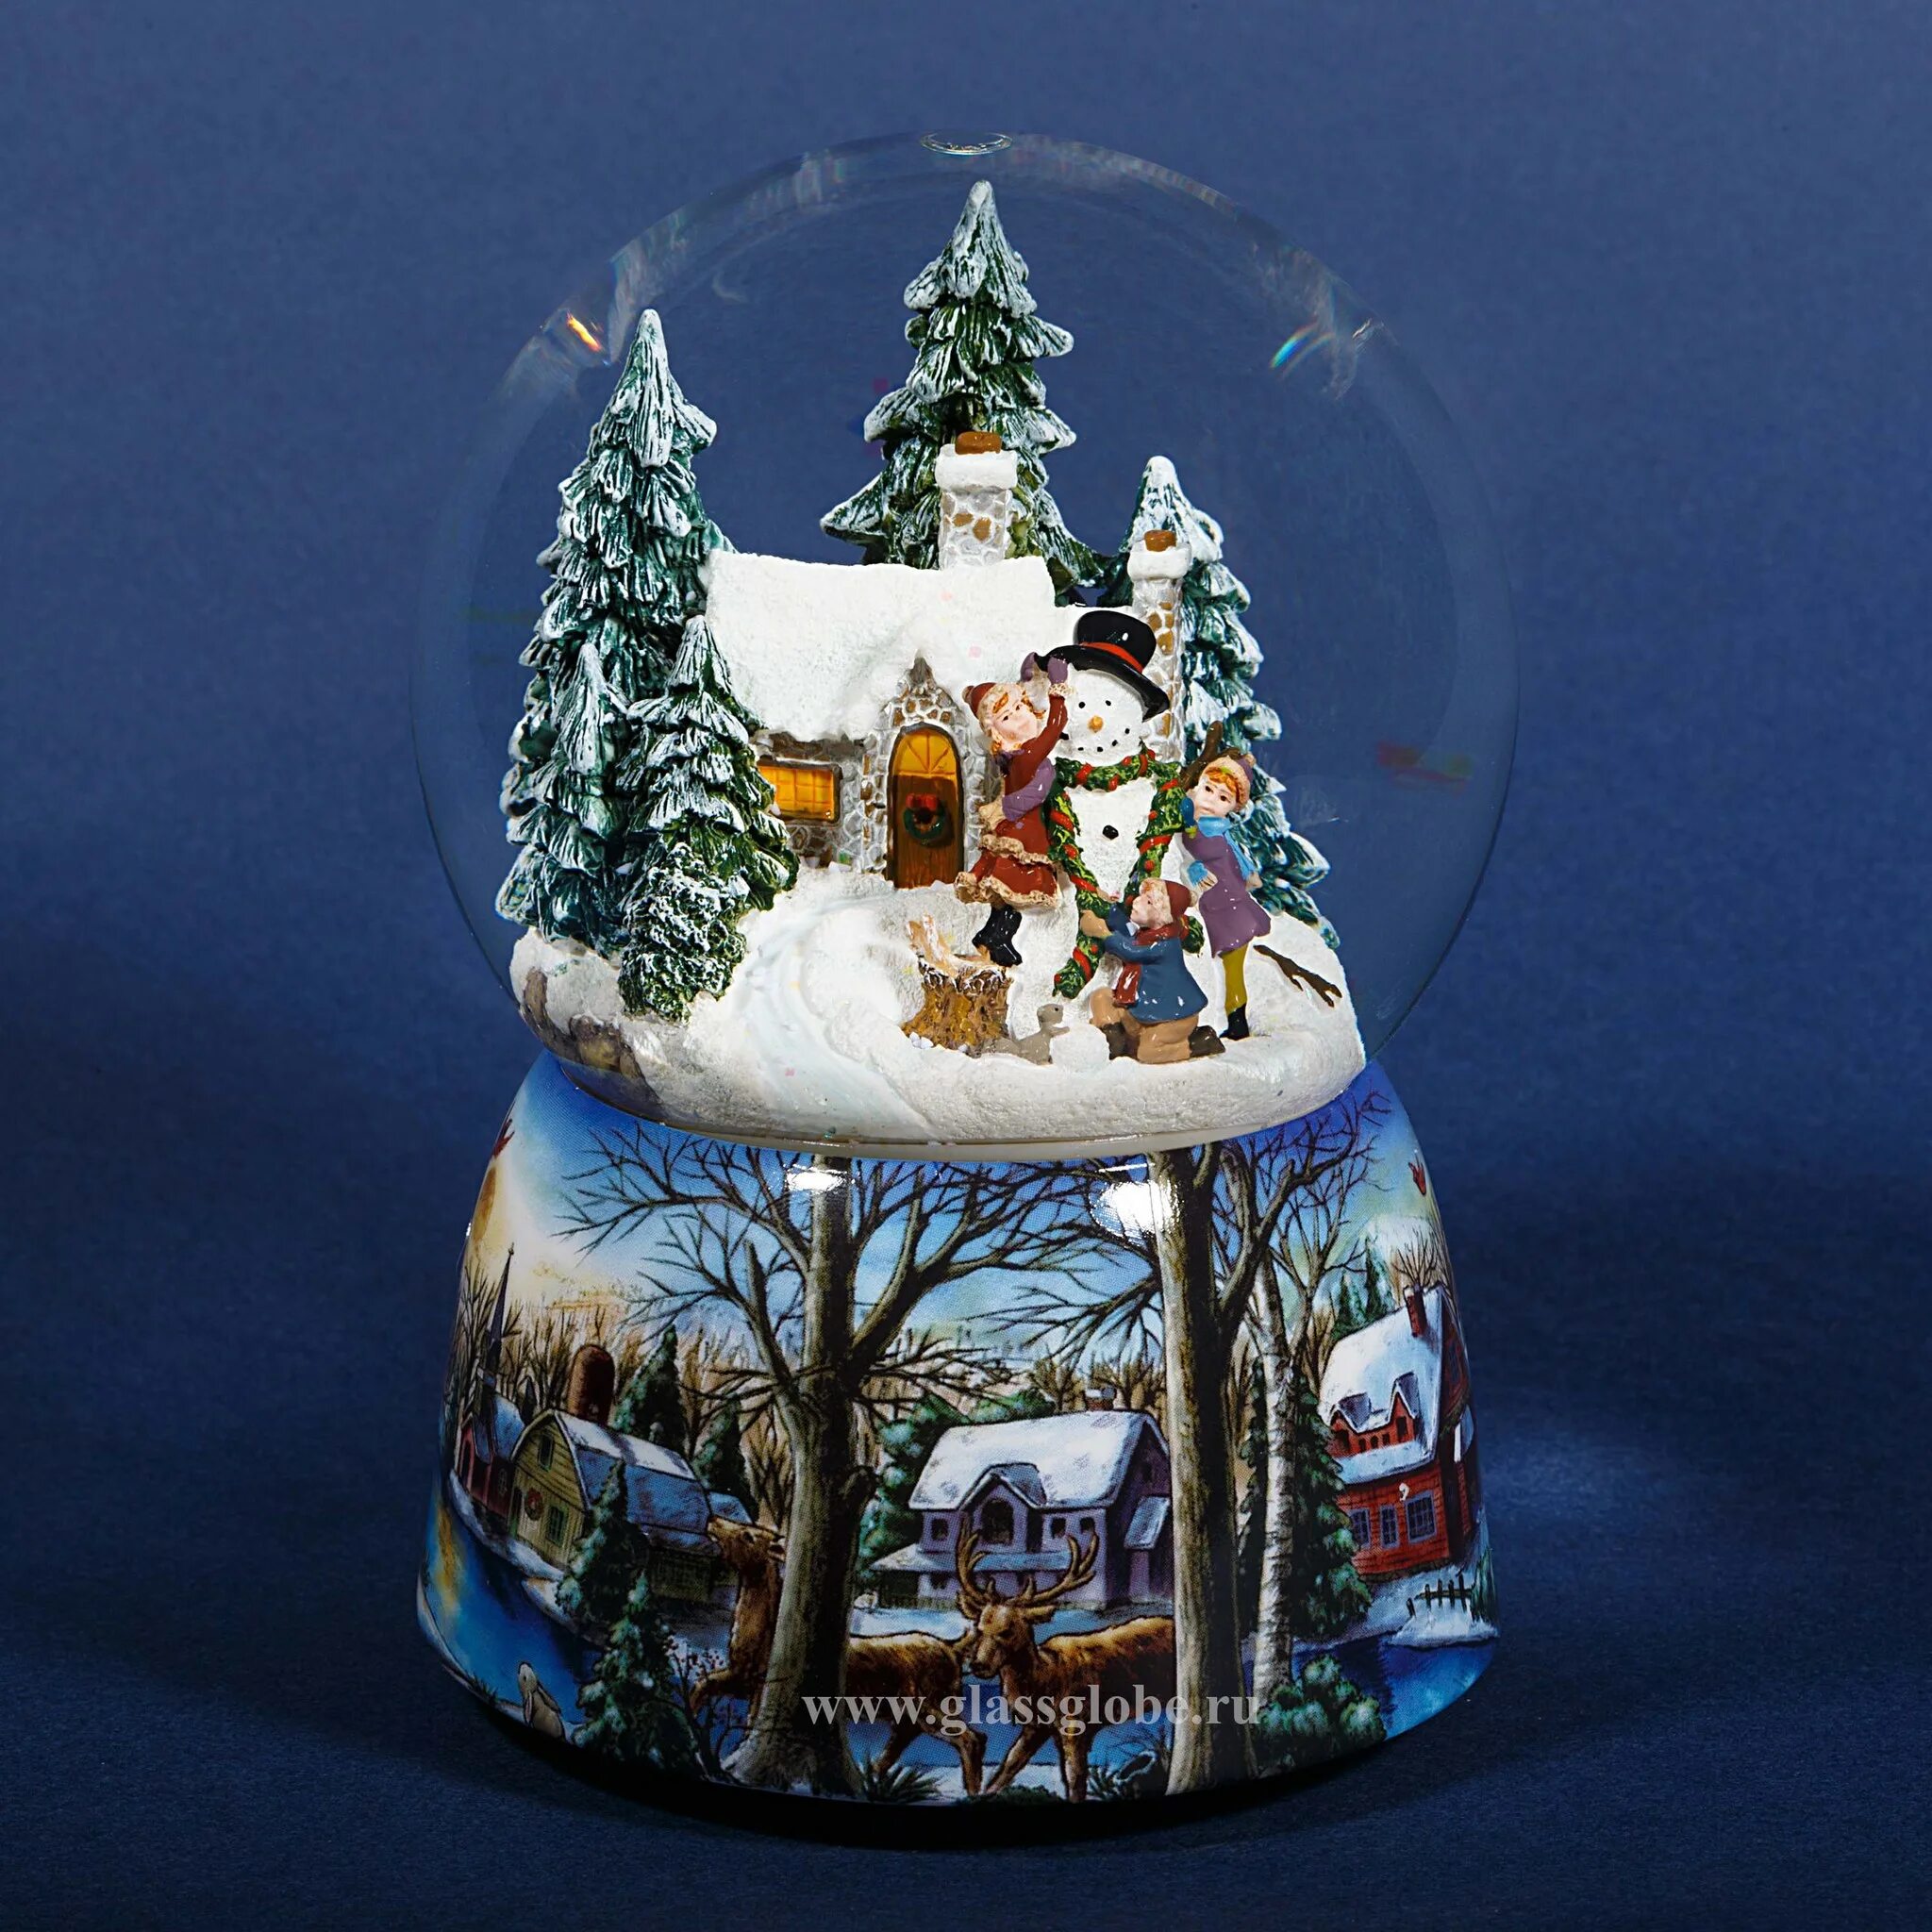 2 снежный шар. Снежный шар Glassglobe "домик в лесу". Midland снежный шар. Снежный шар Peha. Стеклянный шар со снегом.